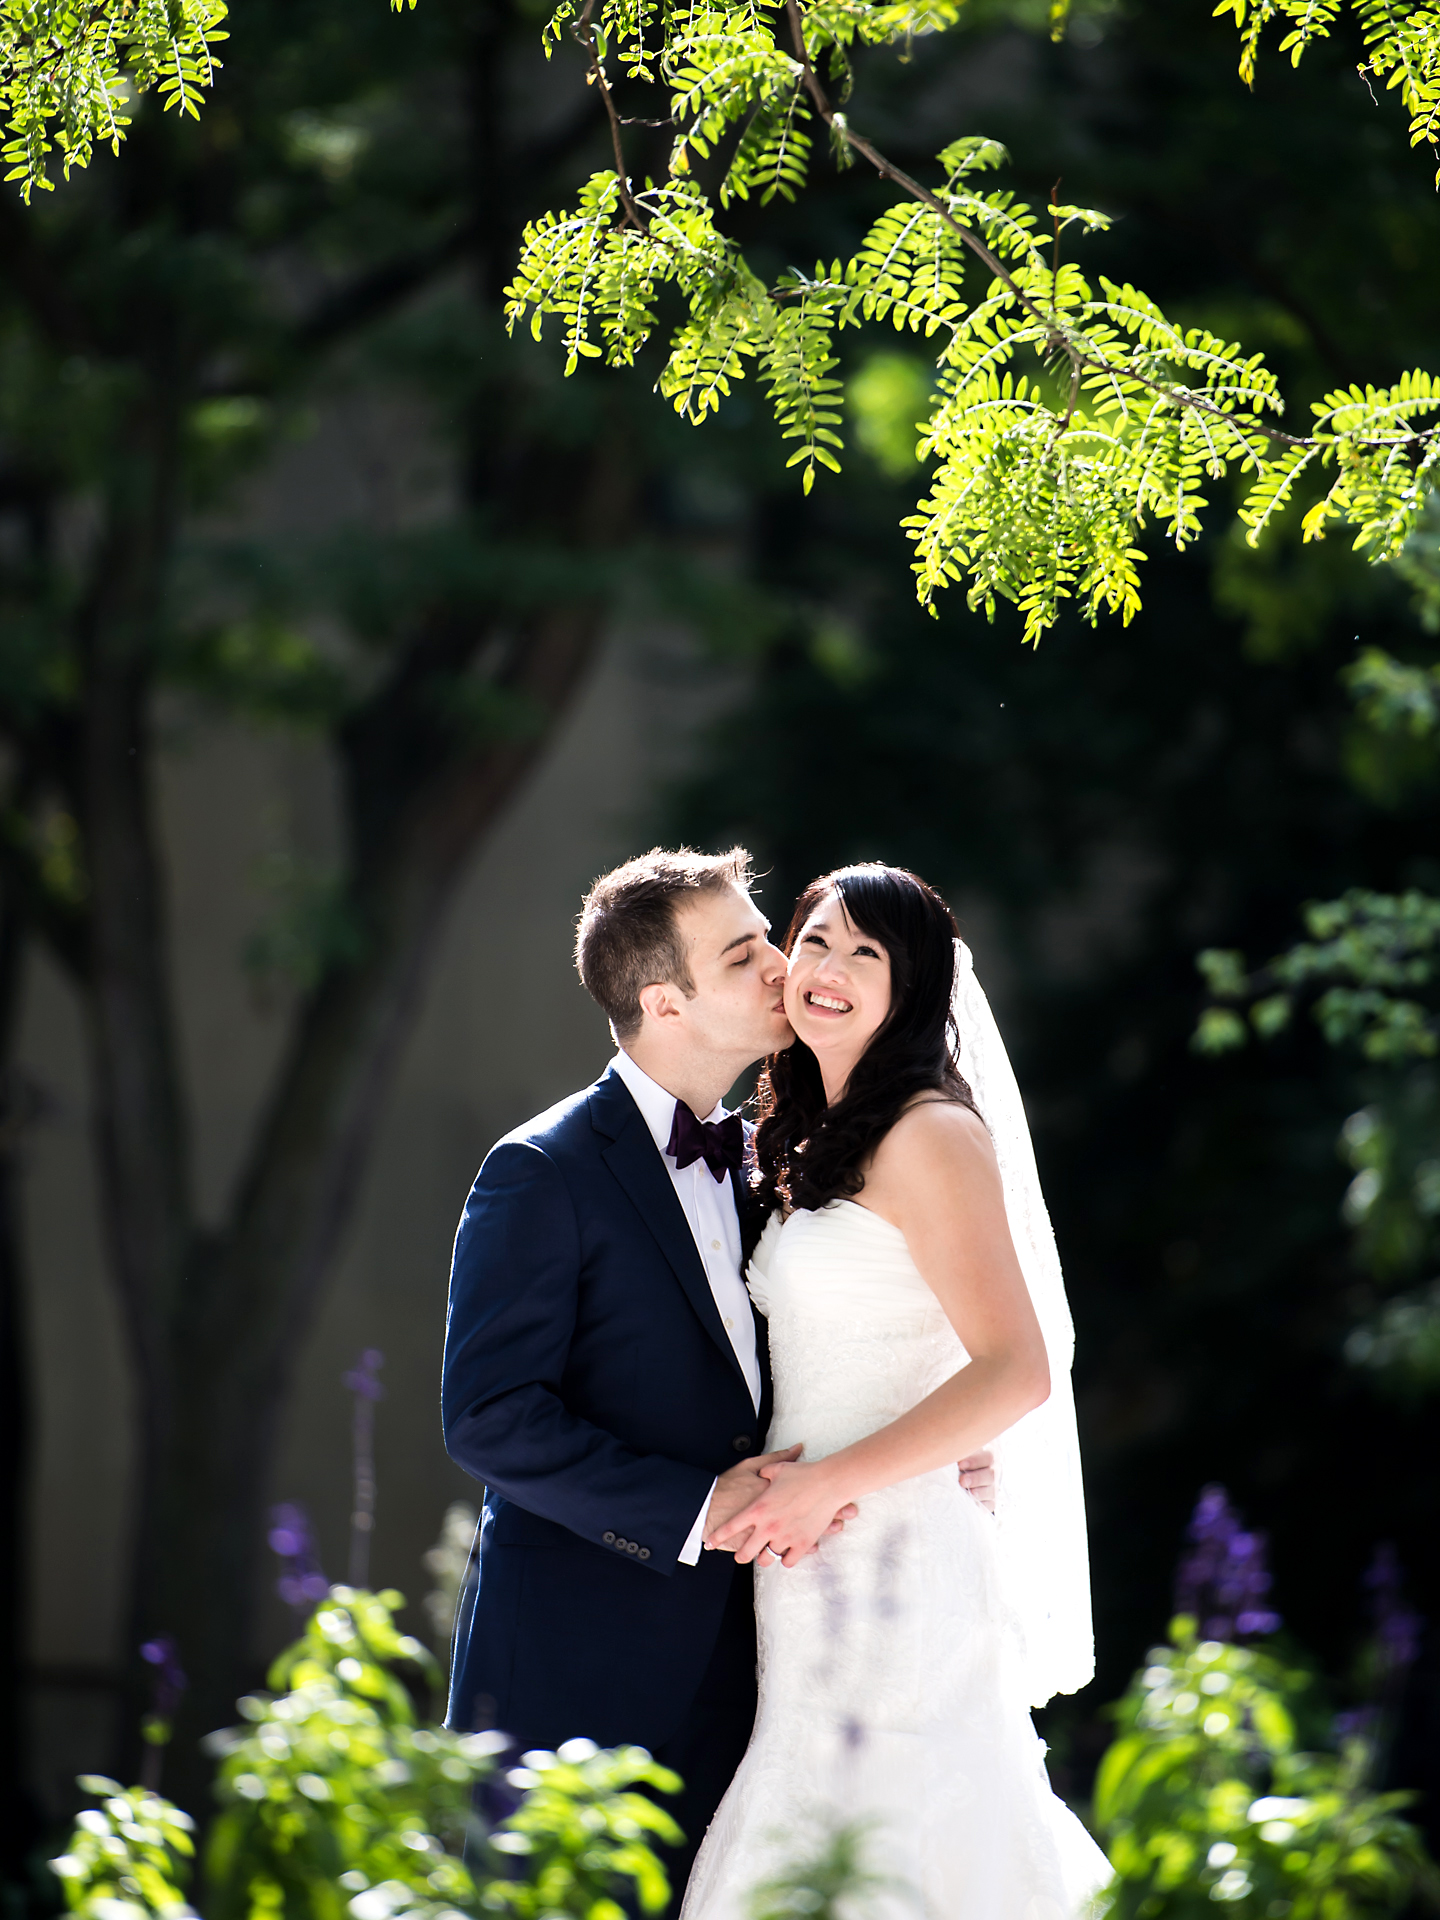 Costas & Erin | Palais Royale Wedding | Toronto Wedding Photography23